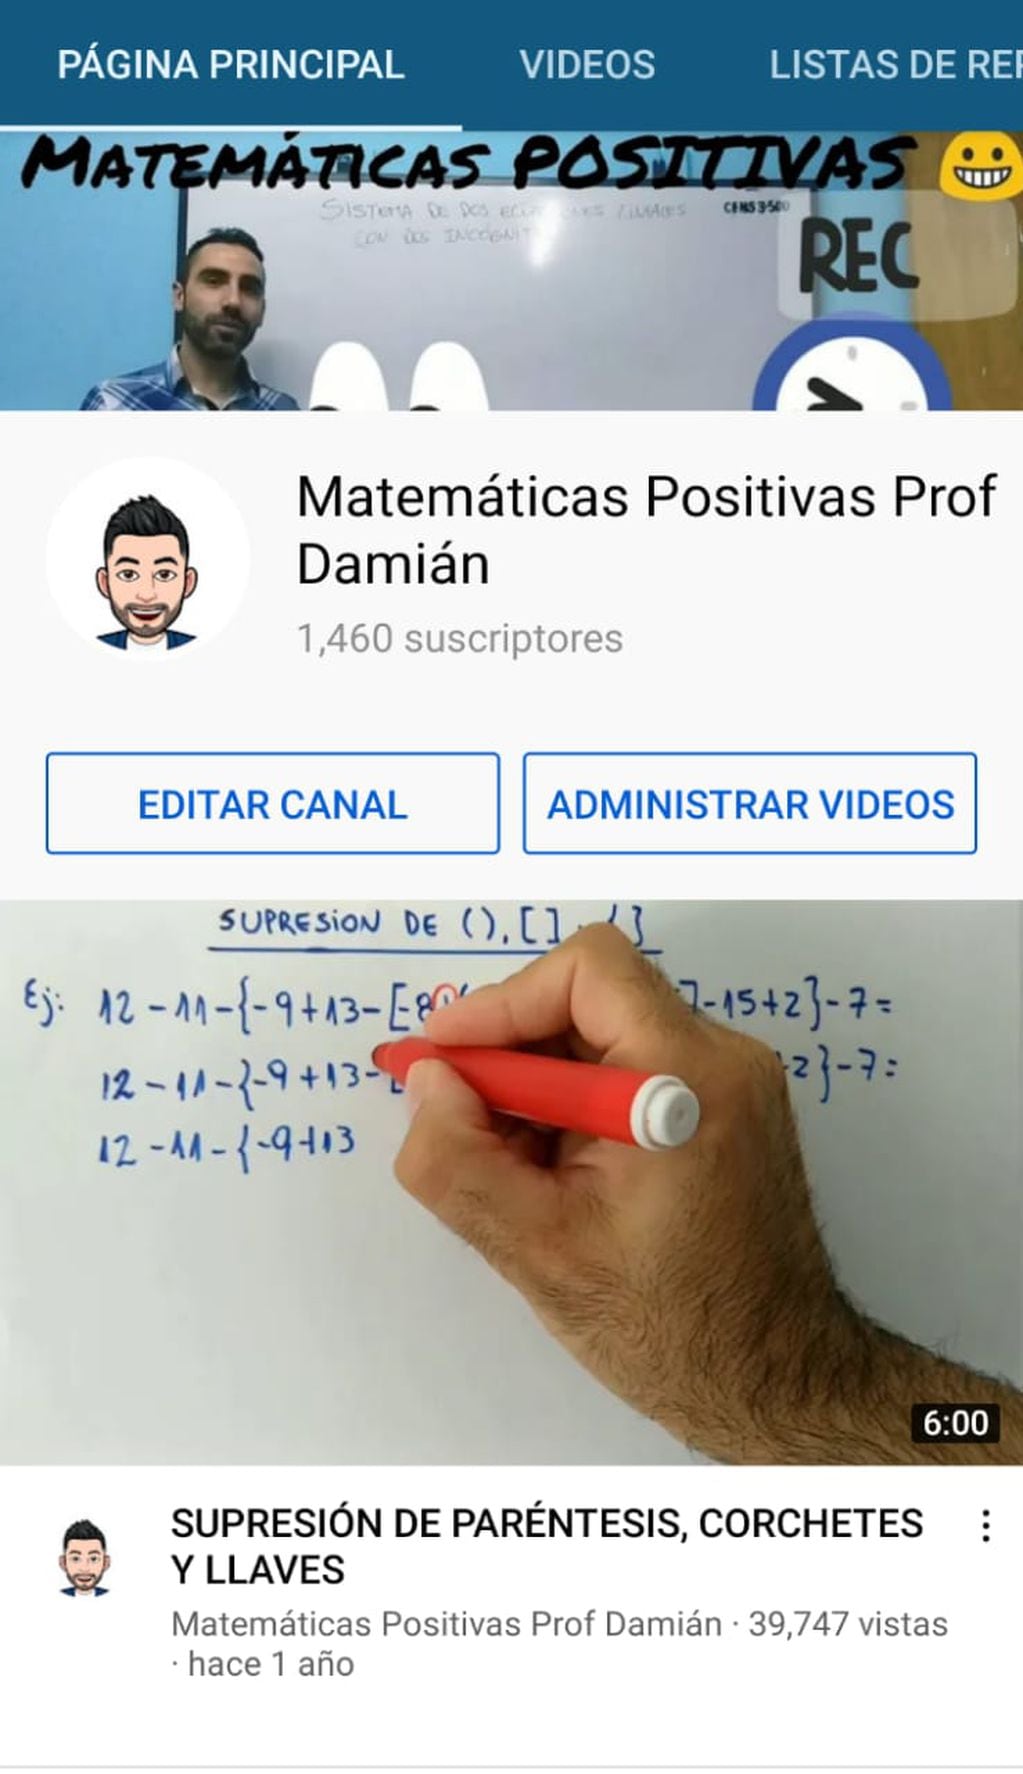 El canal "Matemáticas Positivas"